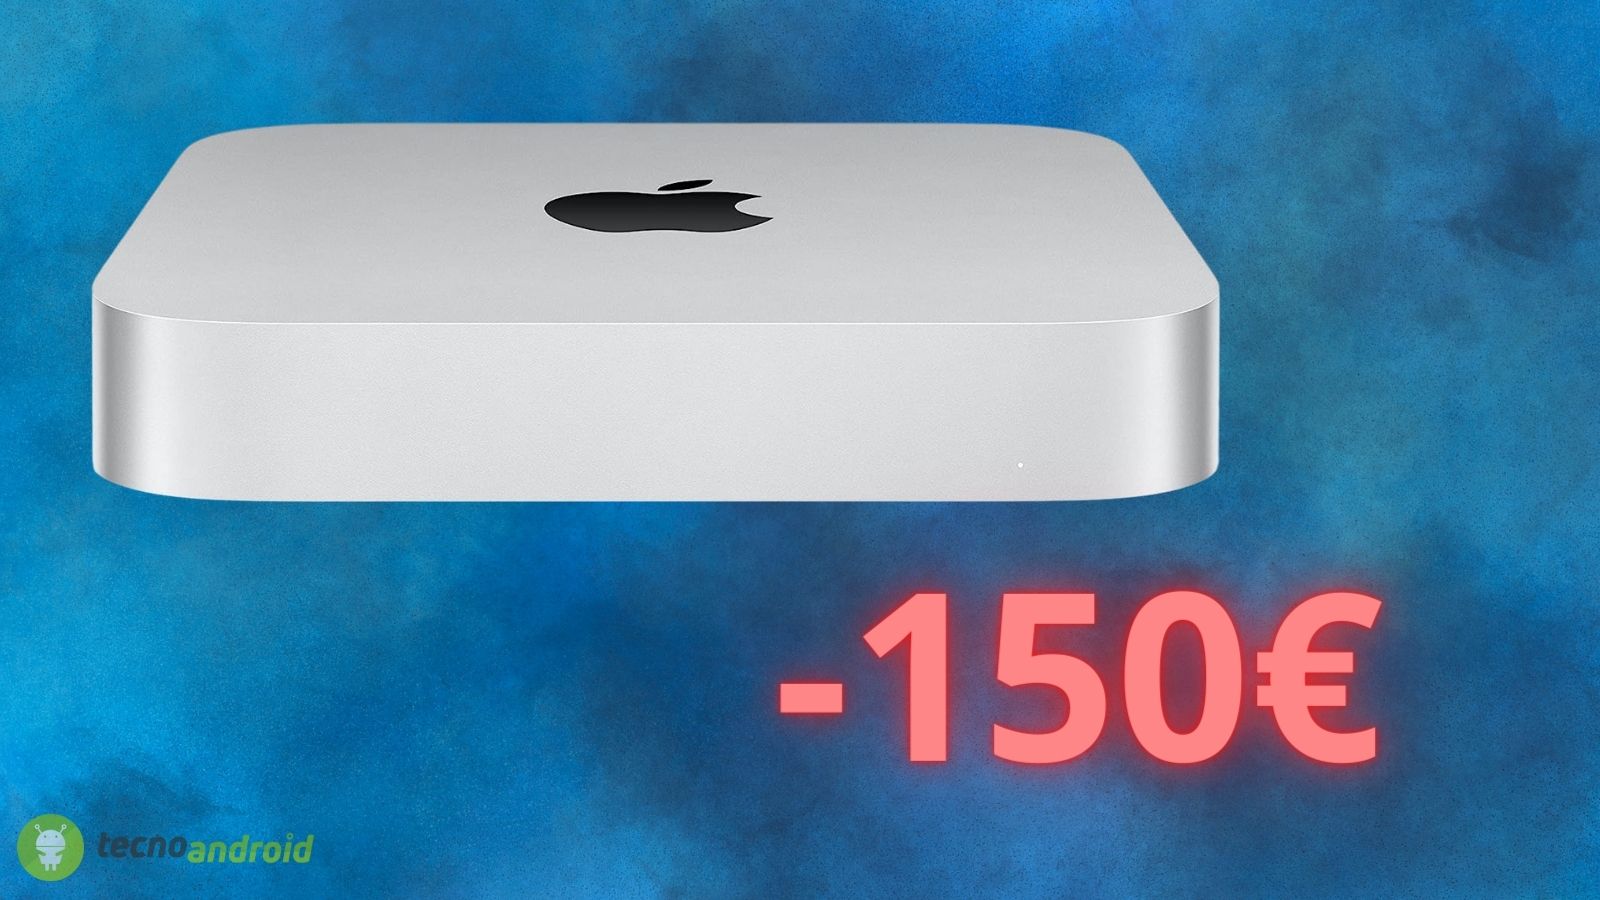 Apple Mac Mini: il mini PC da comprare subito su AMAZON (-150€)